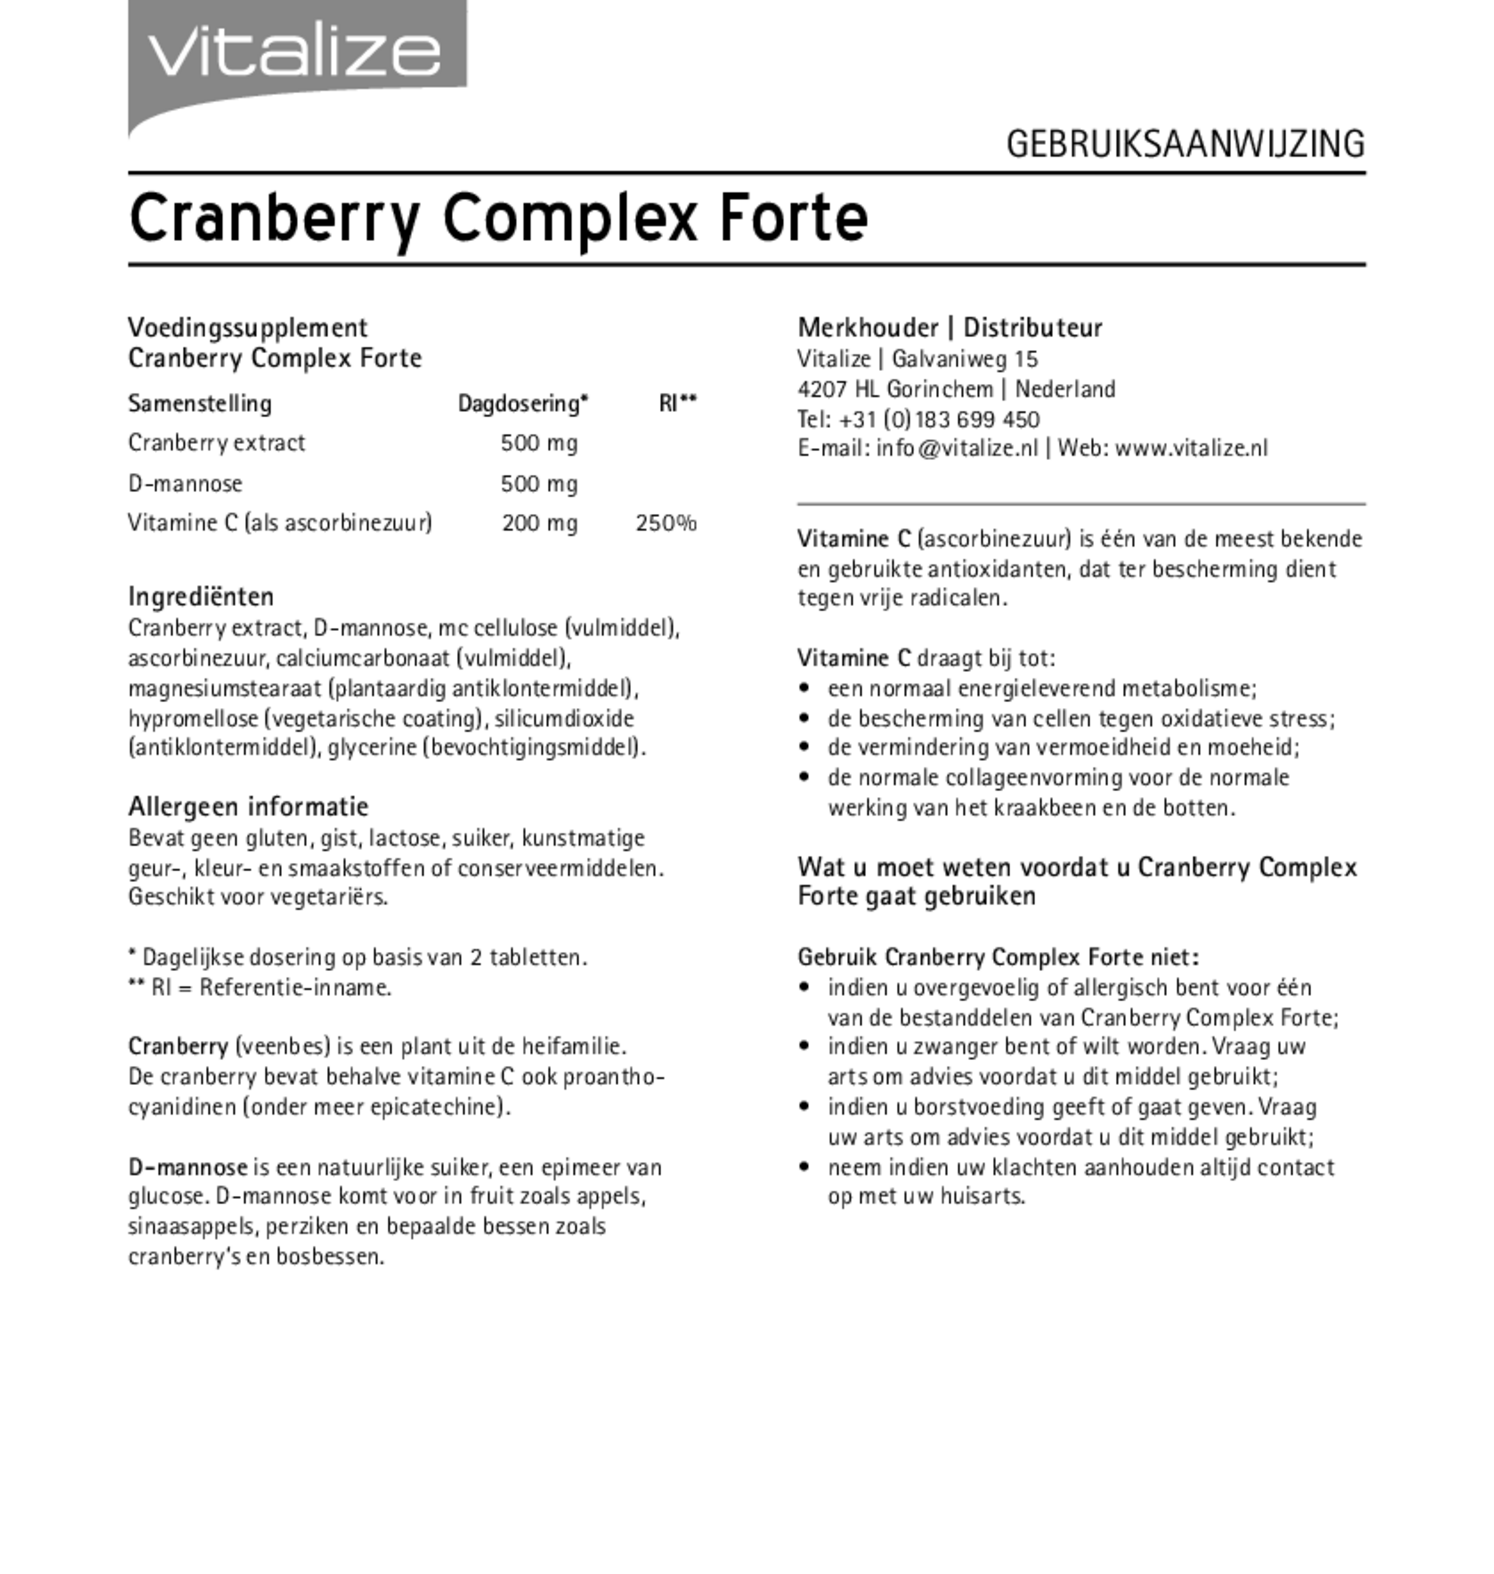 Cranberry Complex Forte Tabletten afbeelding van document #1, gebruiksaanwijzing